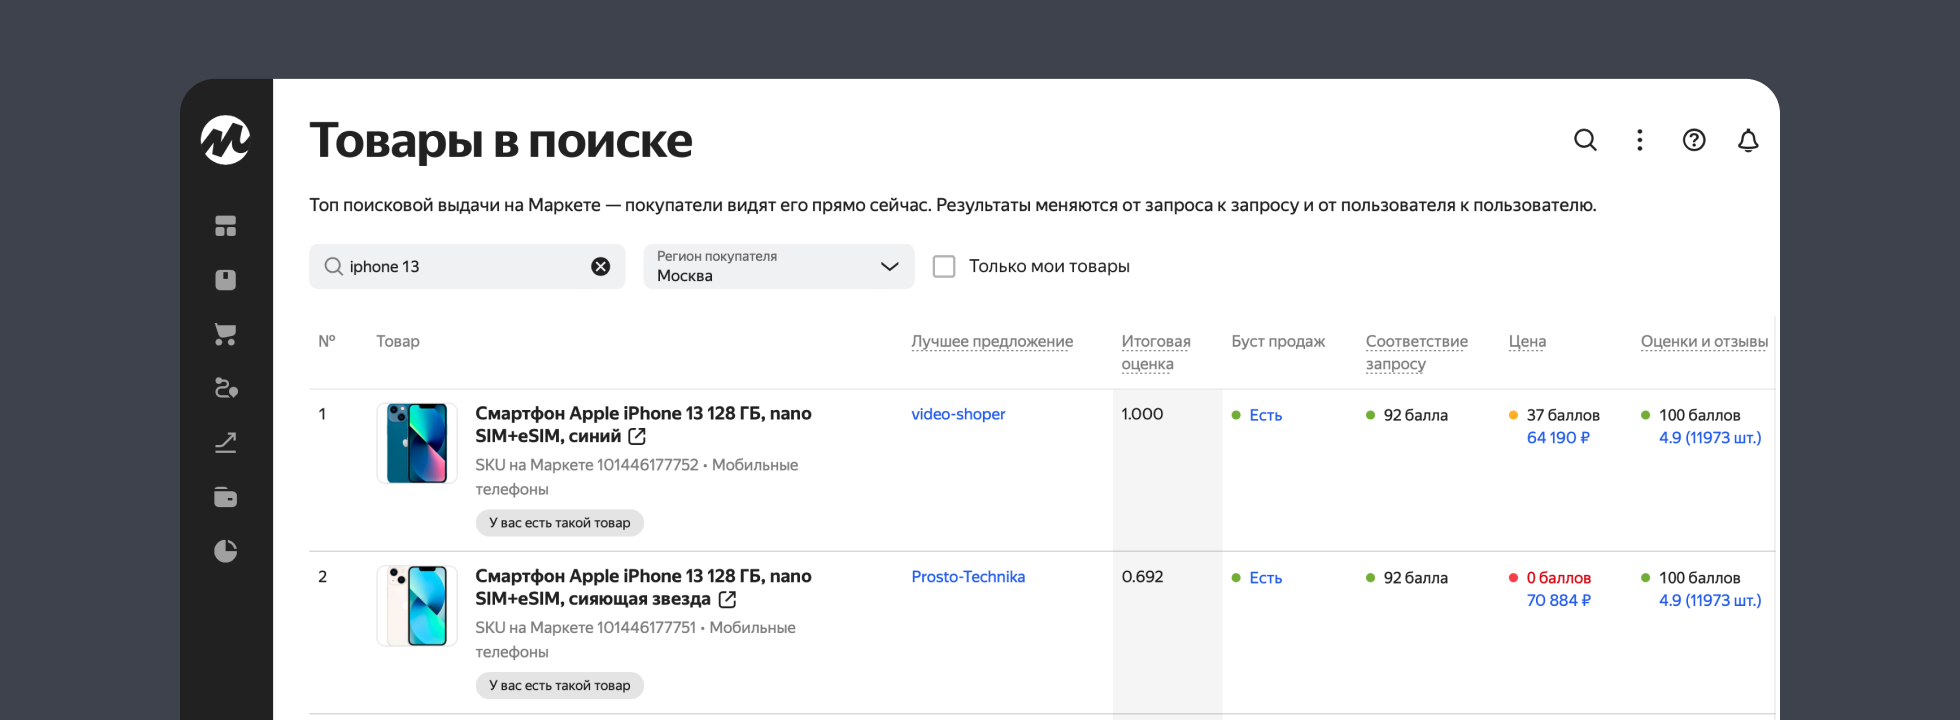 Отчёт «Товары в поиске» от Яндекс.Маркета